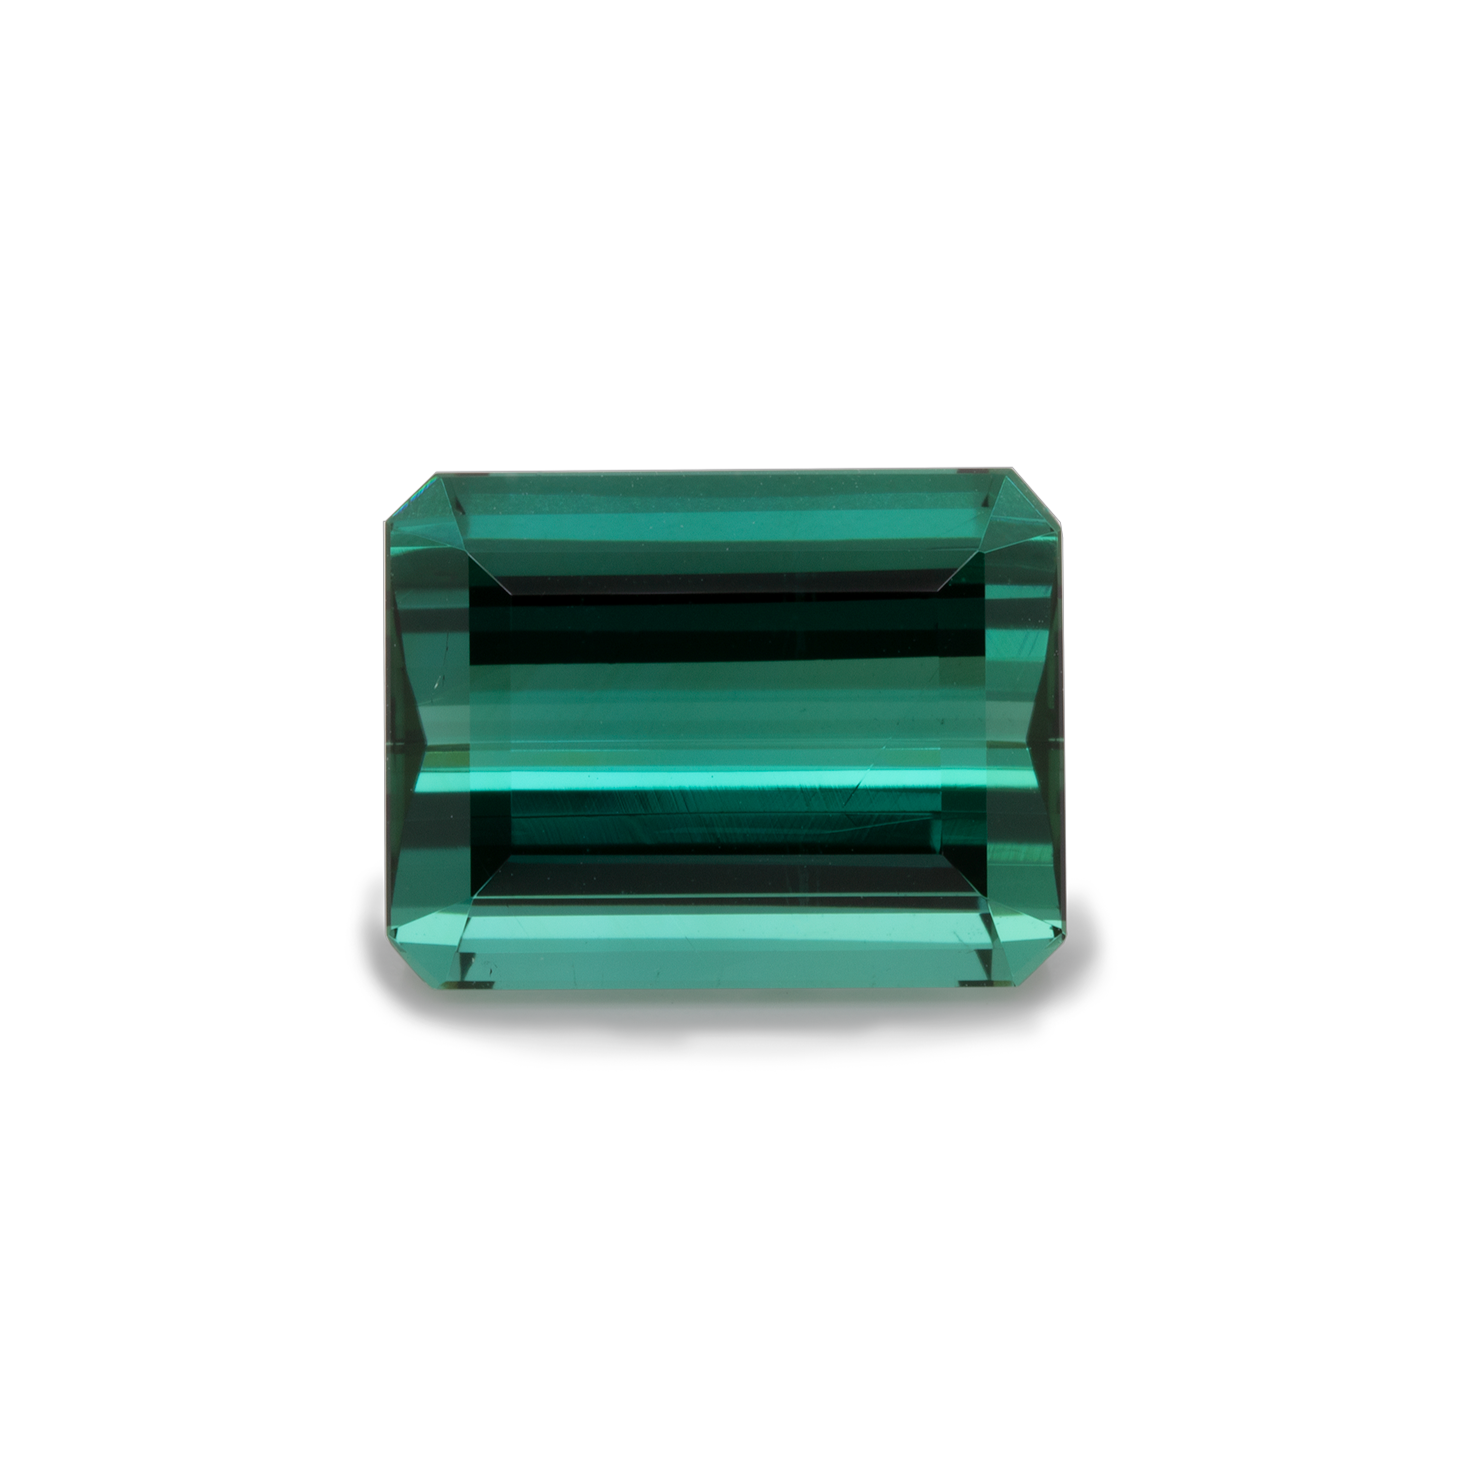 Turmalin - grün, achteck, 12x9,5 mm, 6,35 cts, Nr. TR25001